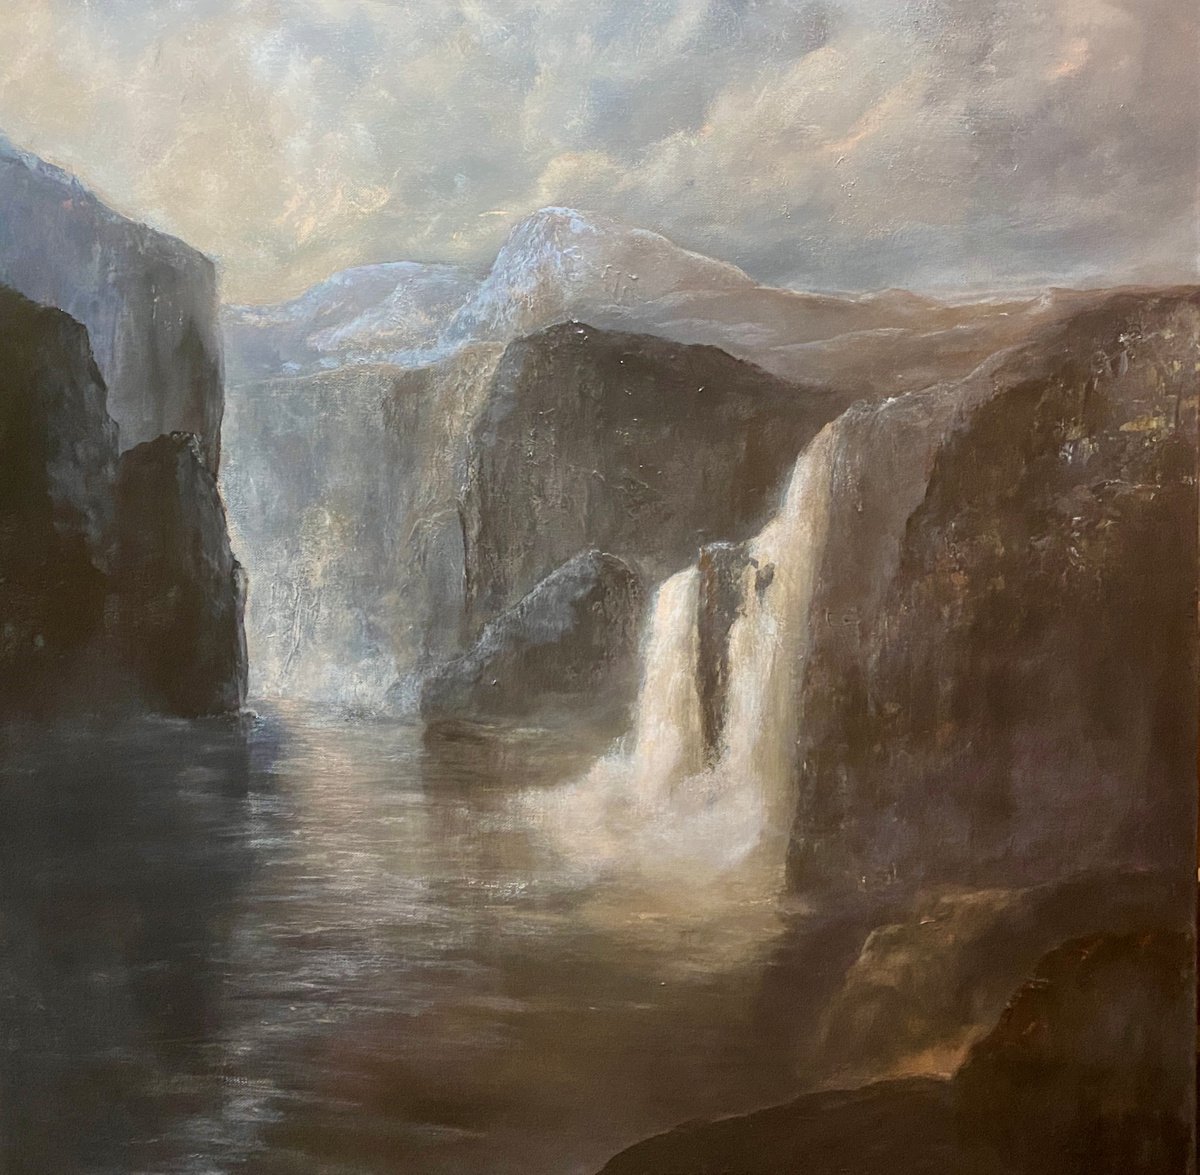 Mountain and waterfalls by Heidi Irene Kainulainen